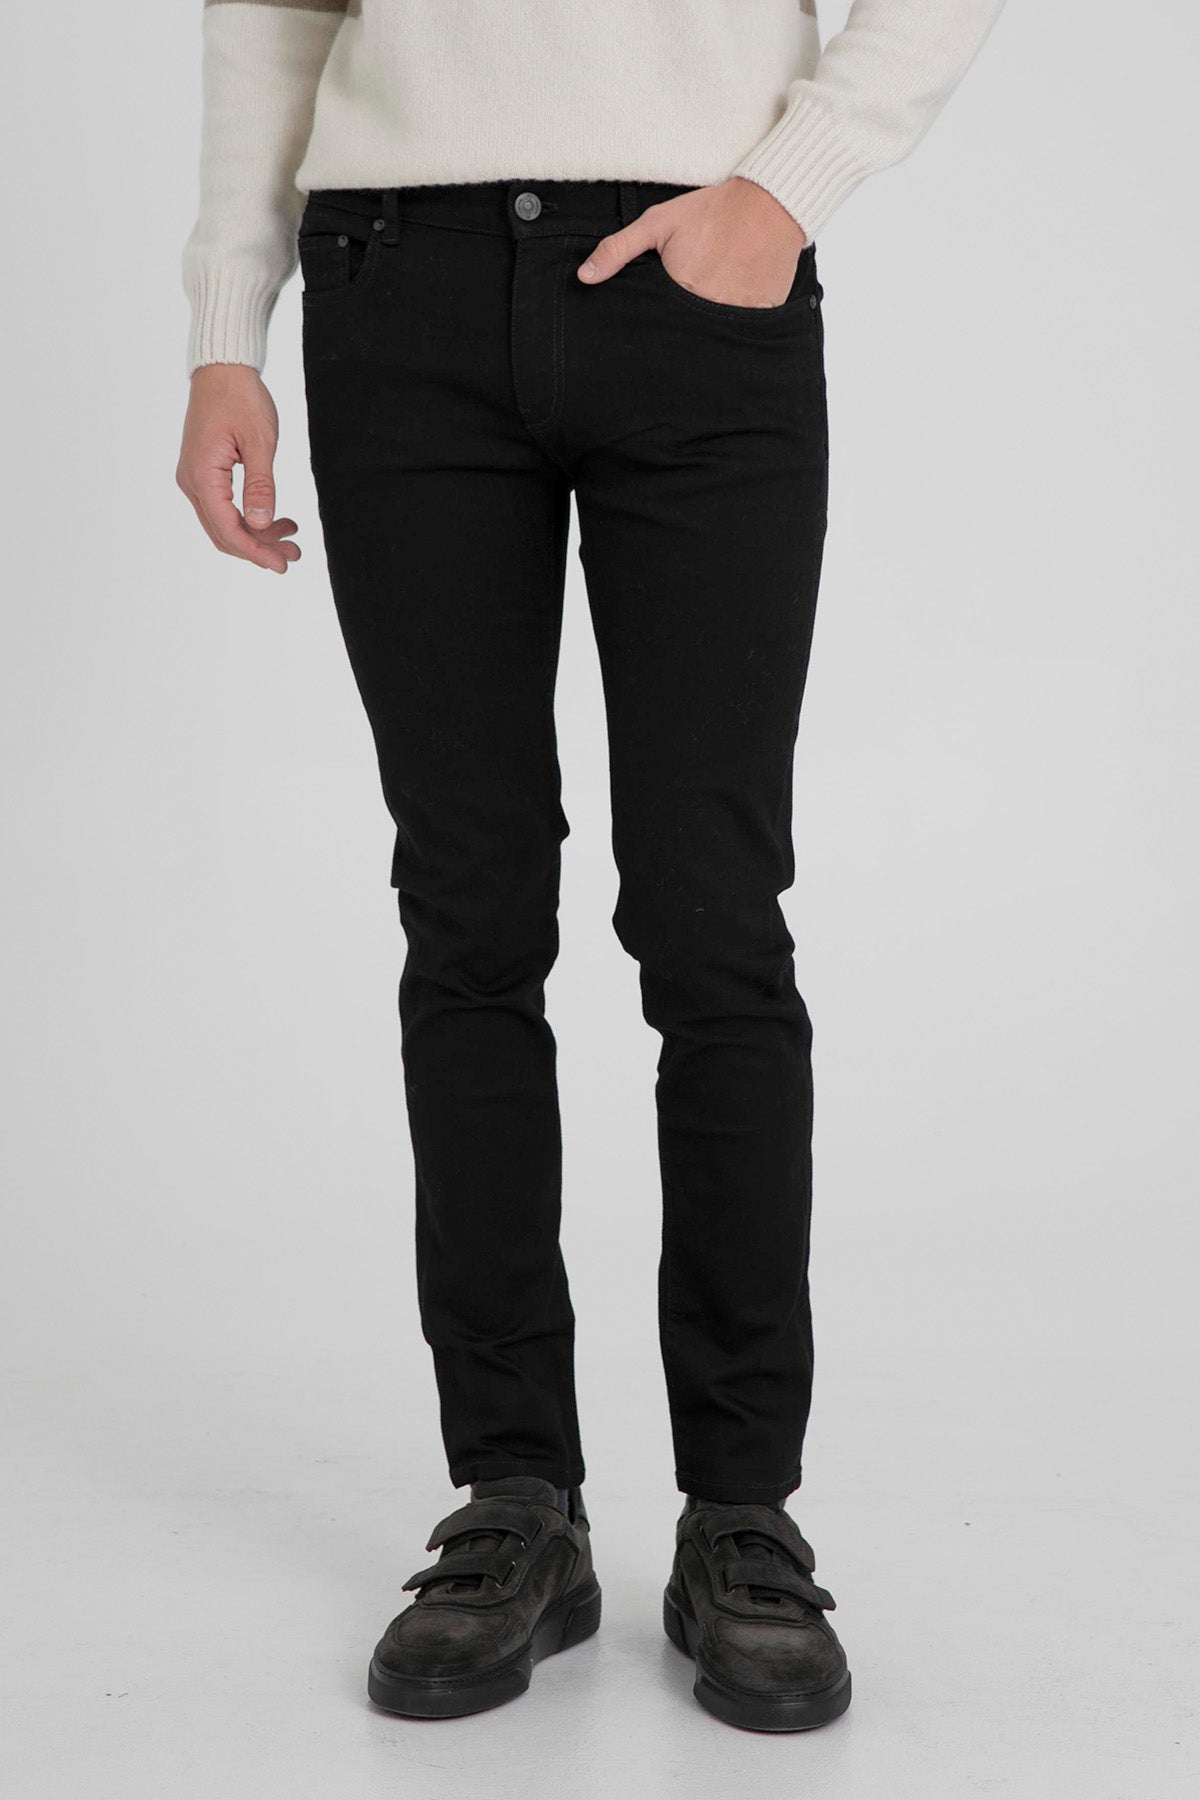 Pantaloni Torino Rock Fit Streç Jeans-Libas Trendy Fashion Store